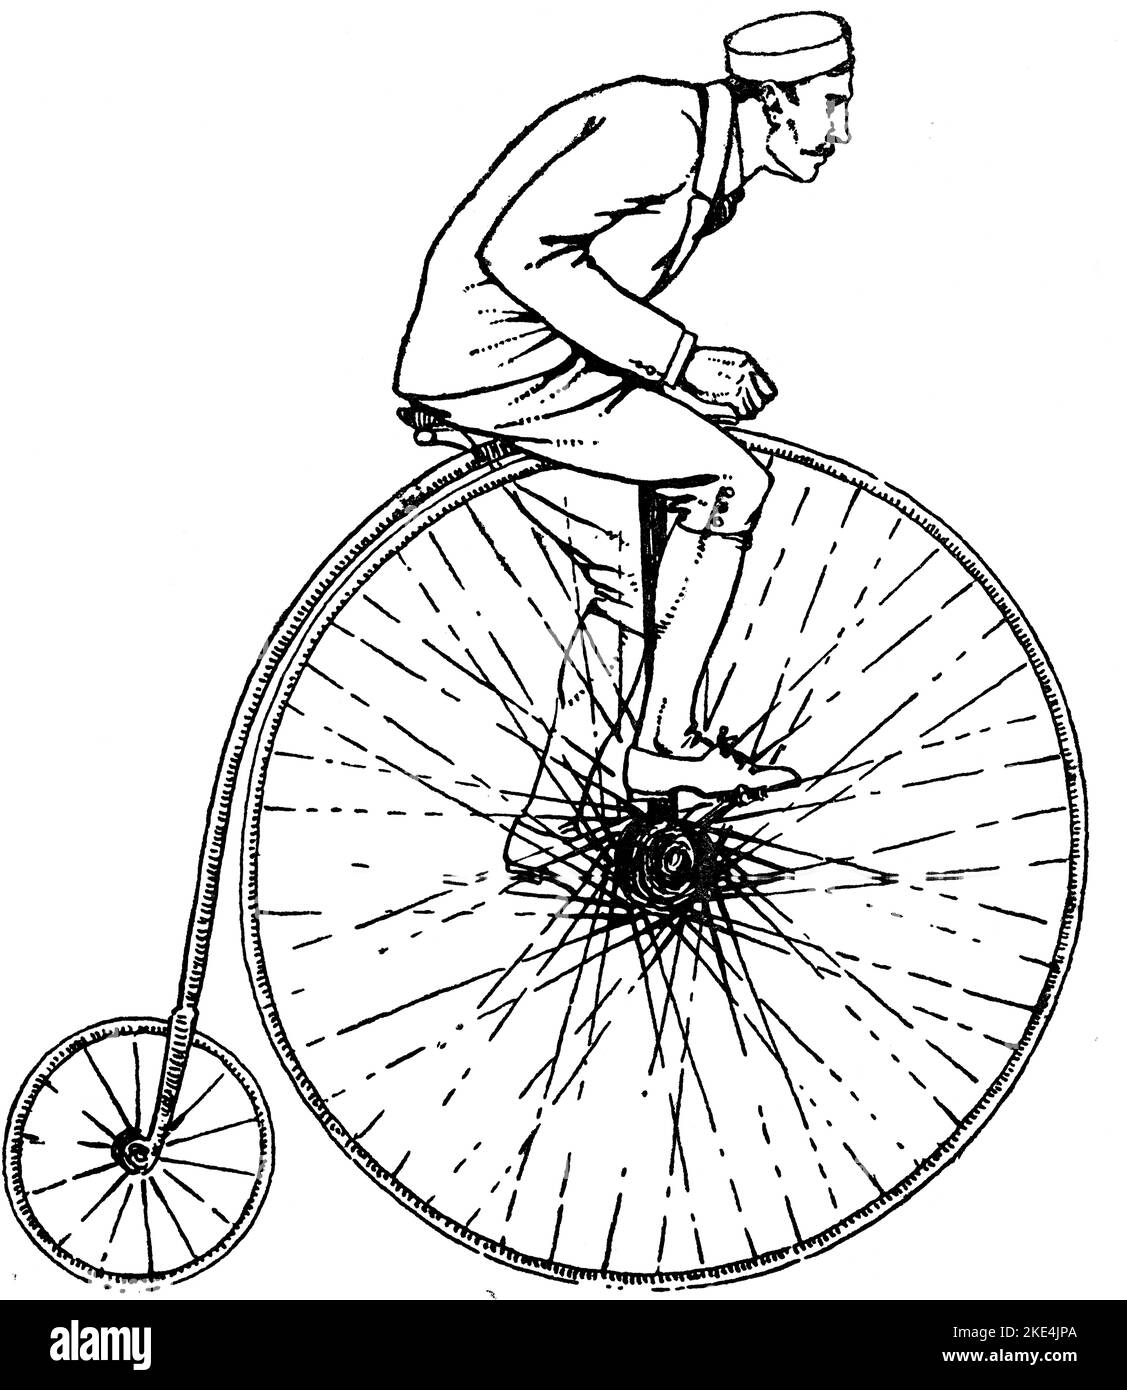 Un Penny-Farthing de 1884 (1942). La Penny-farthing, également connue sous le nom de roue haute, roue haute ou ordinaire, est un premier type de vélo. Il a été populaire dans les 1870s et 1880s, avec sa grande roue avant offrant des vitesses élevées et le confort. Il est devenu obsolète à la fin de 1880s avec le développement de bicyclettes modernes. Banque D'Images